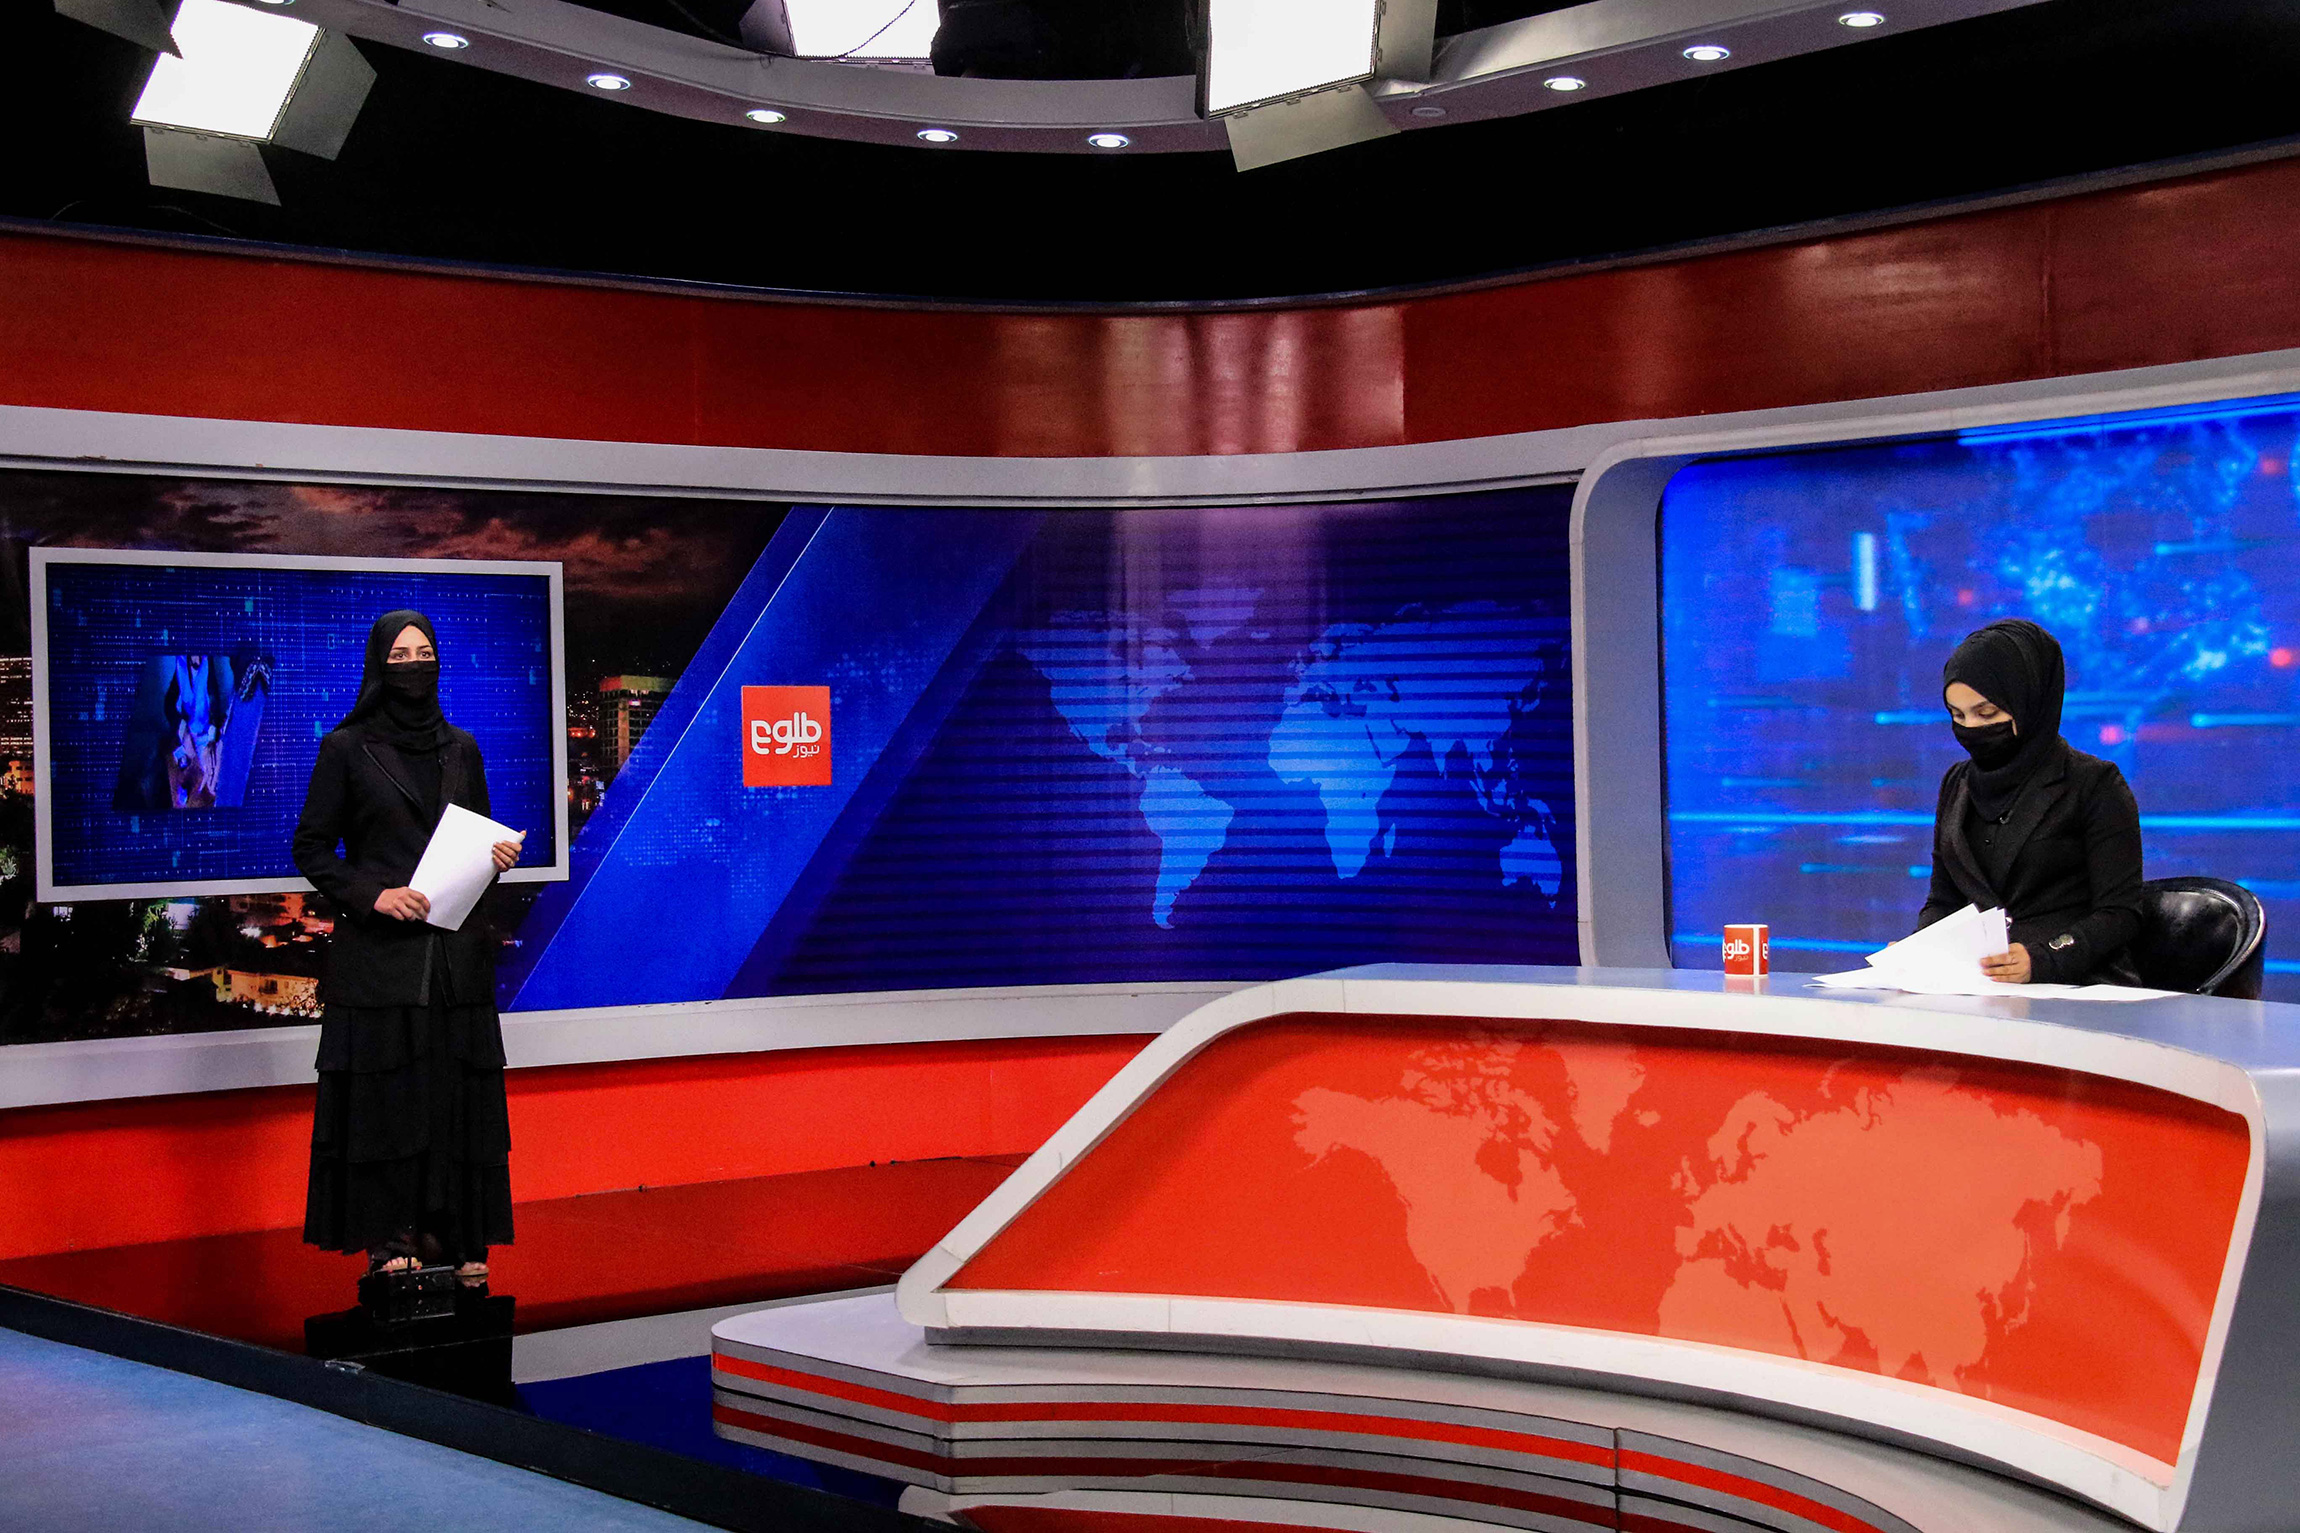 <p>На фото: Хатира Ахмади (слева) и Техмина (справа), афганские ведущие новостей на TOLO TV</p>

<p>После прихода талибов к власти в 2021 году женщины-ведущие смогли <a href="https://www.rbc.ru/rbcfreenews/611b6b3e9a79471dc6619b44">продолжить</a> свою работу, но с ограничениями. В мае 2022 года представитель Министерства по пропаганде добродетели и предотвращению порока Акиф Мухаджир заявил, что сотрудницы всех местных телевещательных компаний должны закрывать лица в эфире, <a href="https://www.aljazeera.com/news/2022/5/19/taliban-say-female-afghan-tv-presenters-must-cover-face-on-air">сообщала</a> Al Jazeera. 19 мая в Twitter-аккаунте TOLO News подтвердили информацию, что власти запретили женщинам с открытыми лицами вести программы</p>